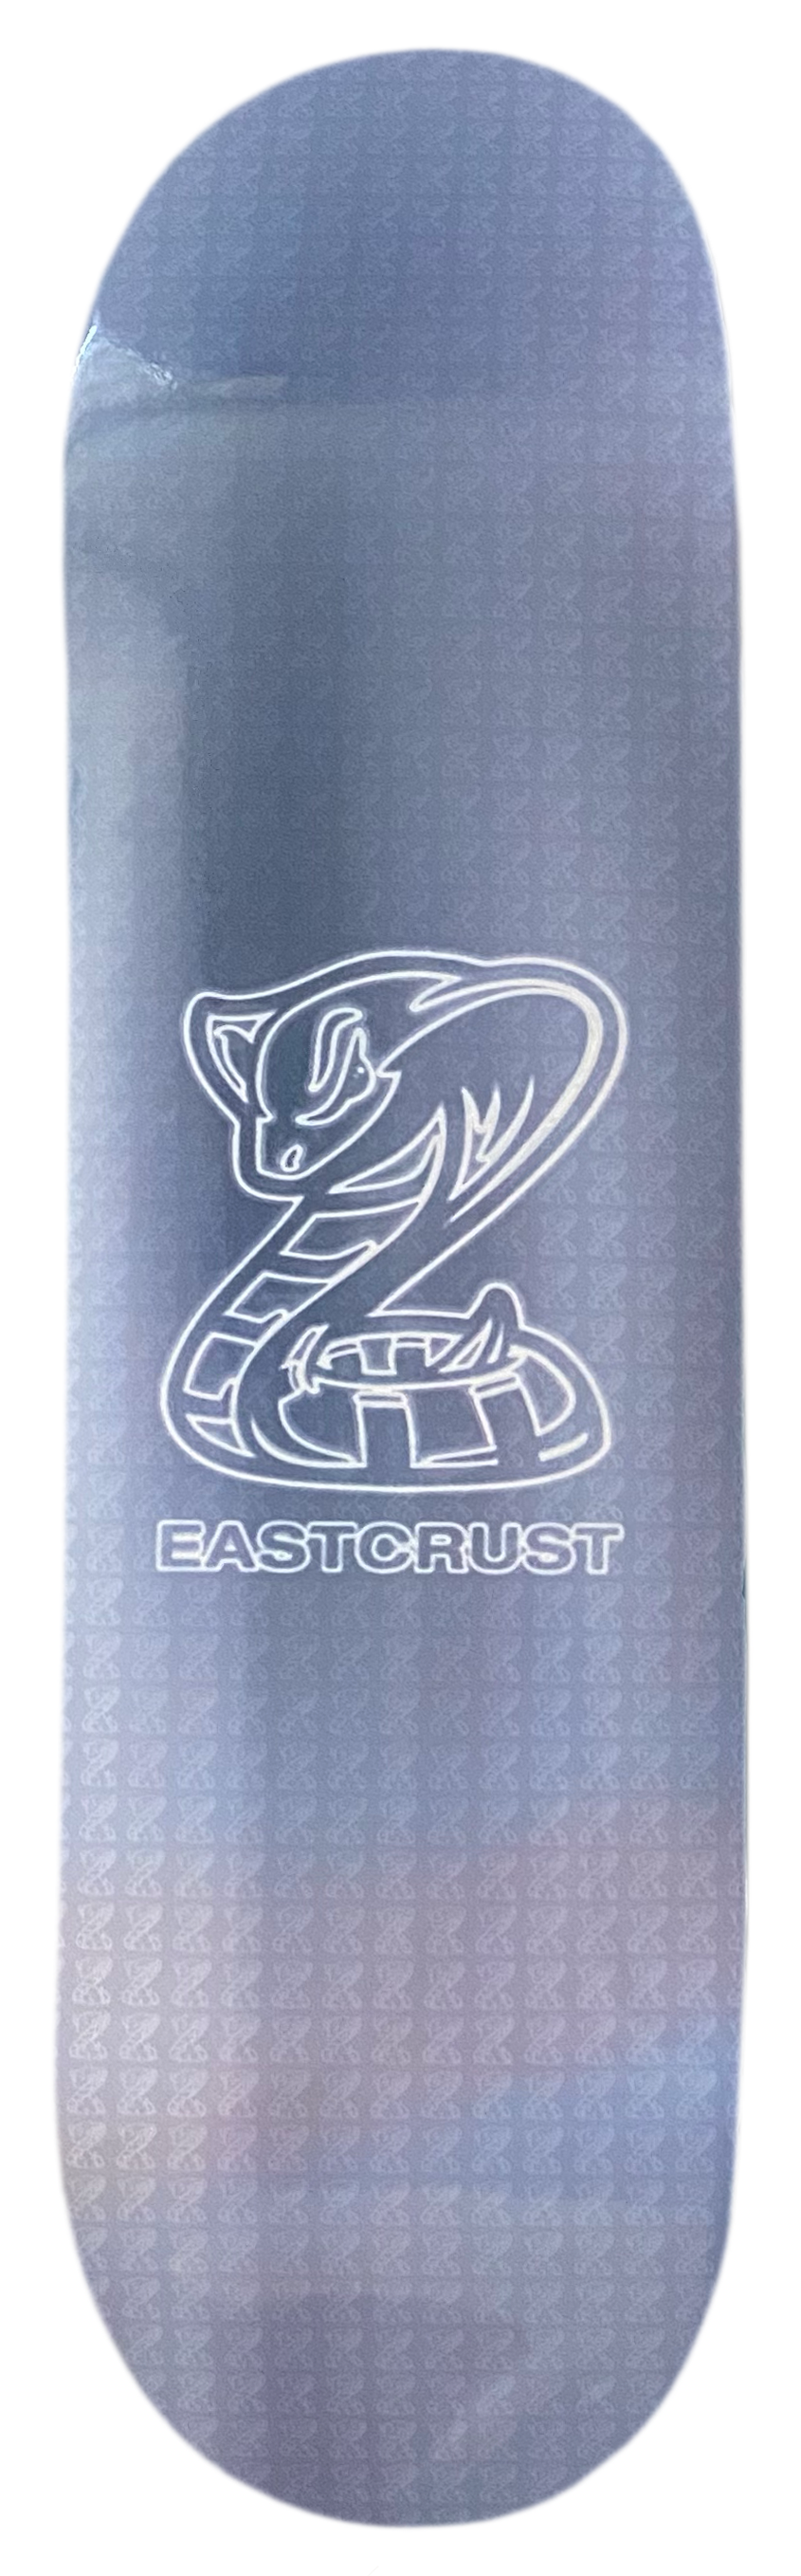 Microchipped* Eastcrust Sliptape Snake Skin + Jessup Grip